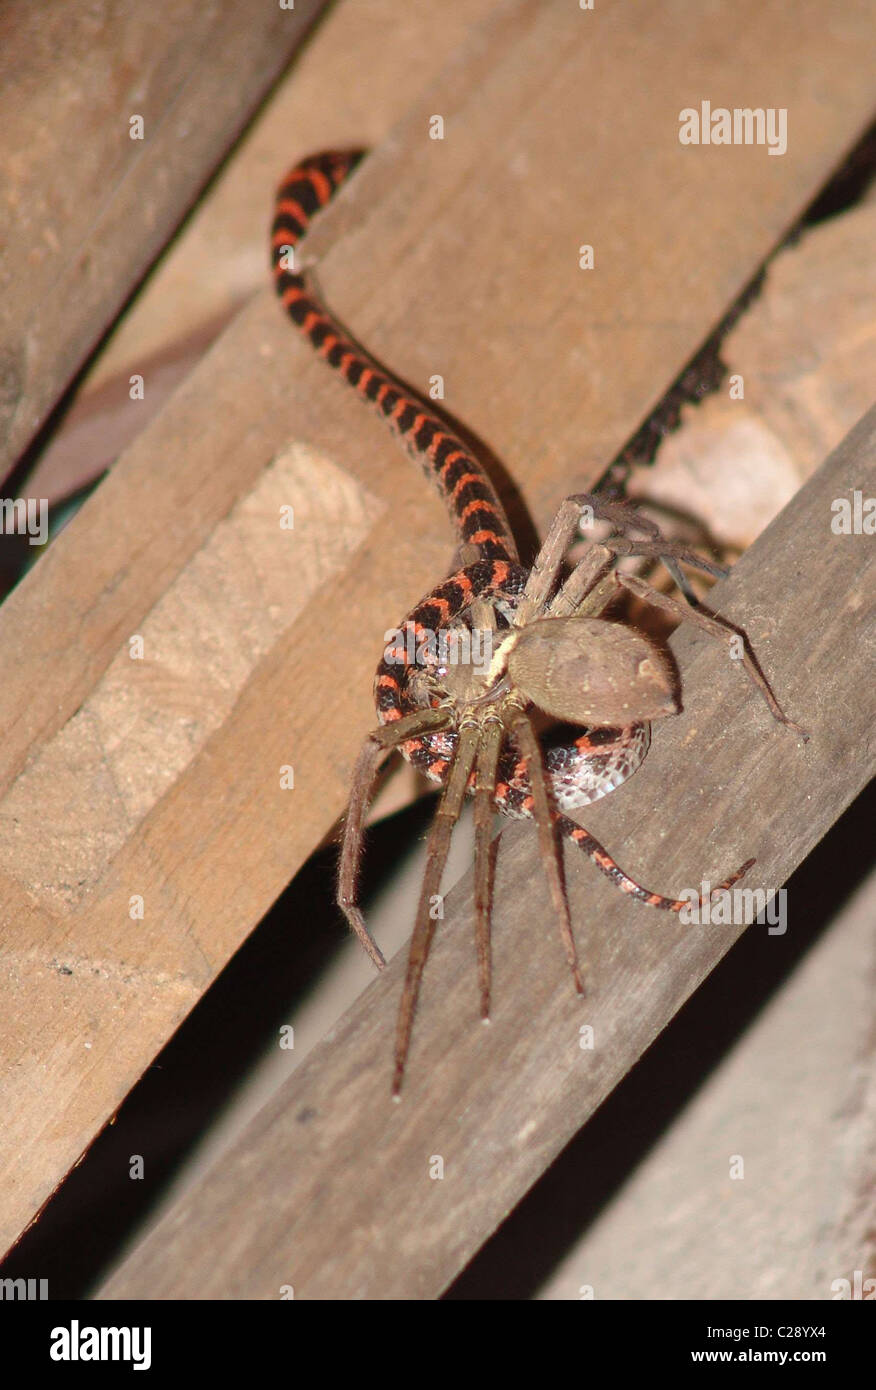 australian spider eating snake